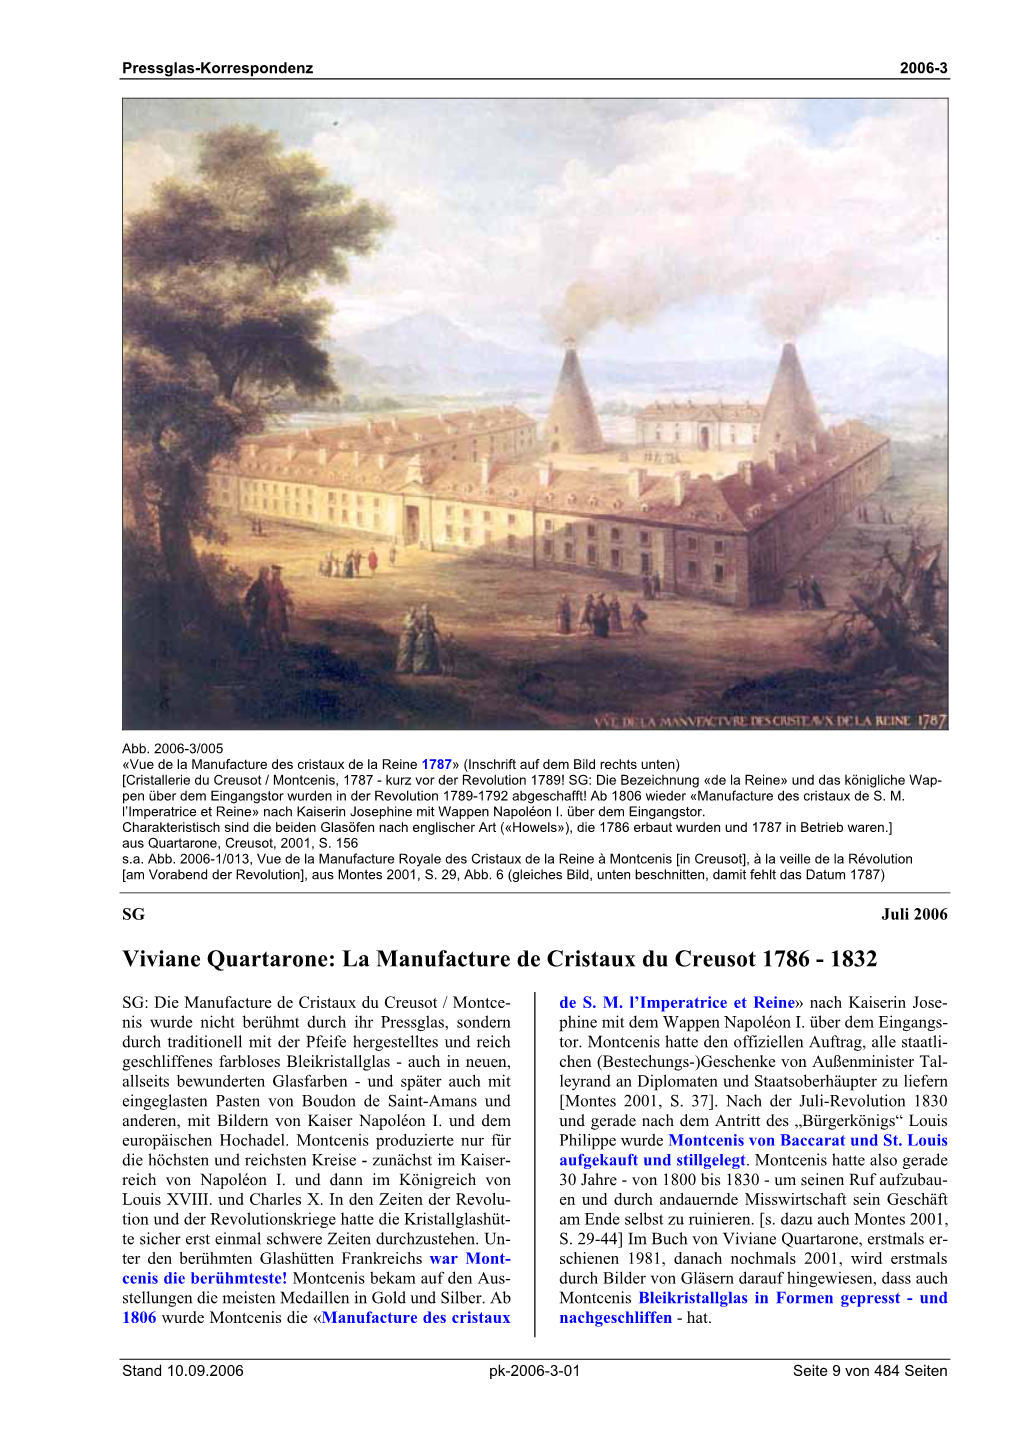 Viviane Quartarone: La Manufacture De Cristaux Du Creusot 1786 - 1832